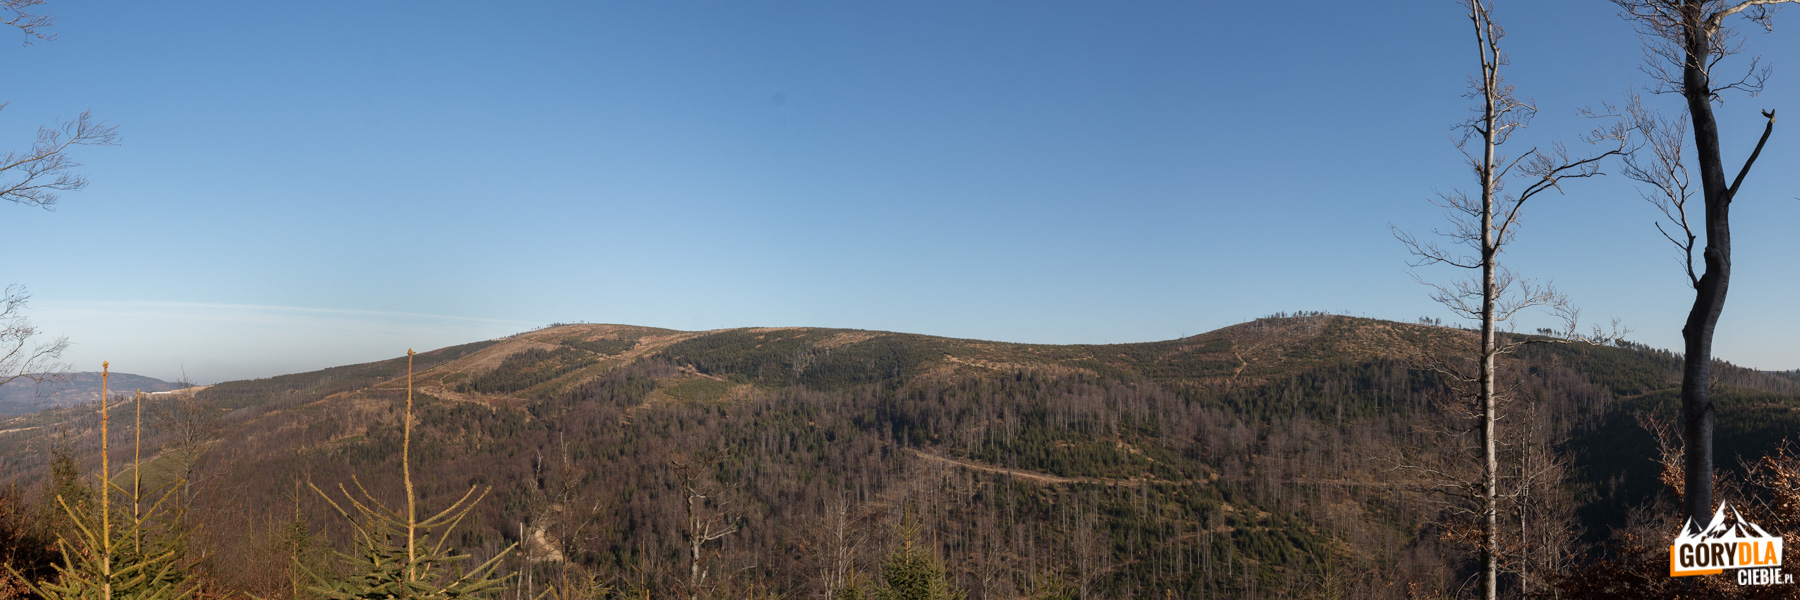 Widok spod szczytu Malinowa na Małe Skrzyczne (1211 m), Kopę Skrzyczeńską (1189 m), Malinowską Skałę (1152 m)